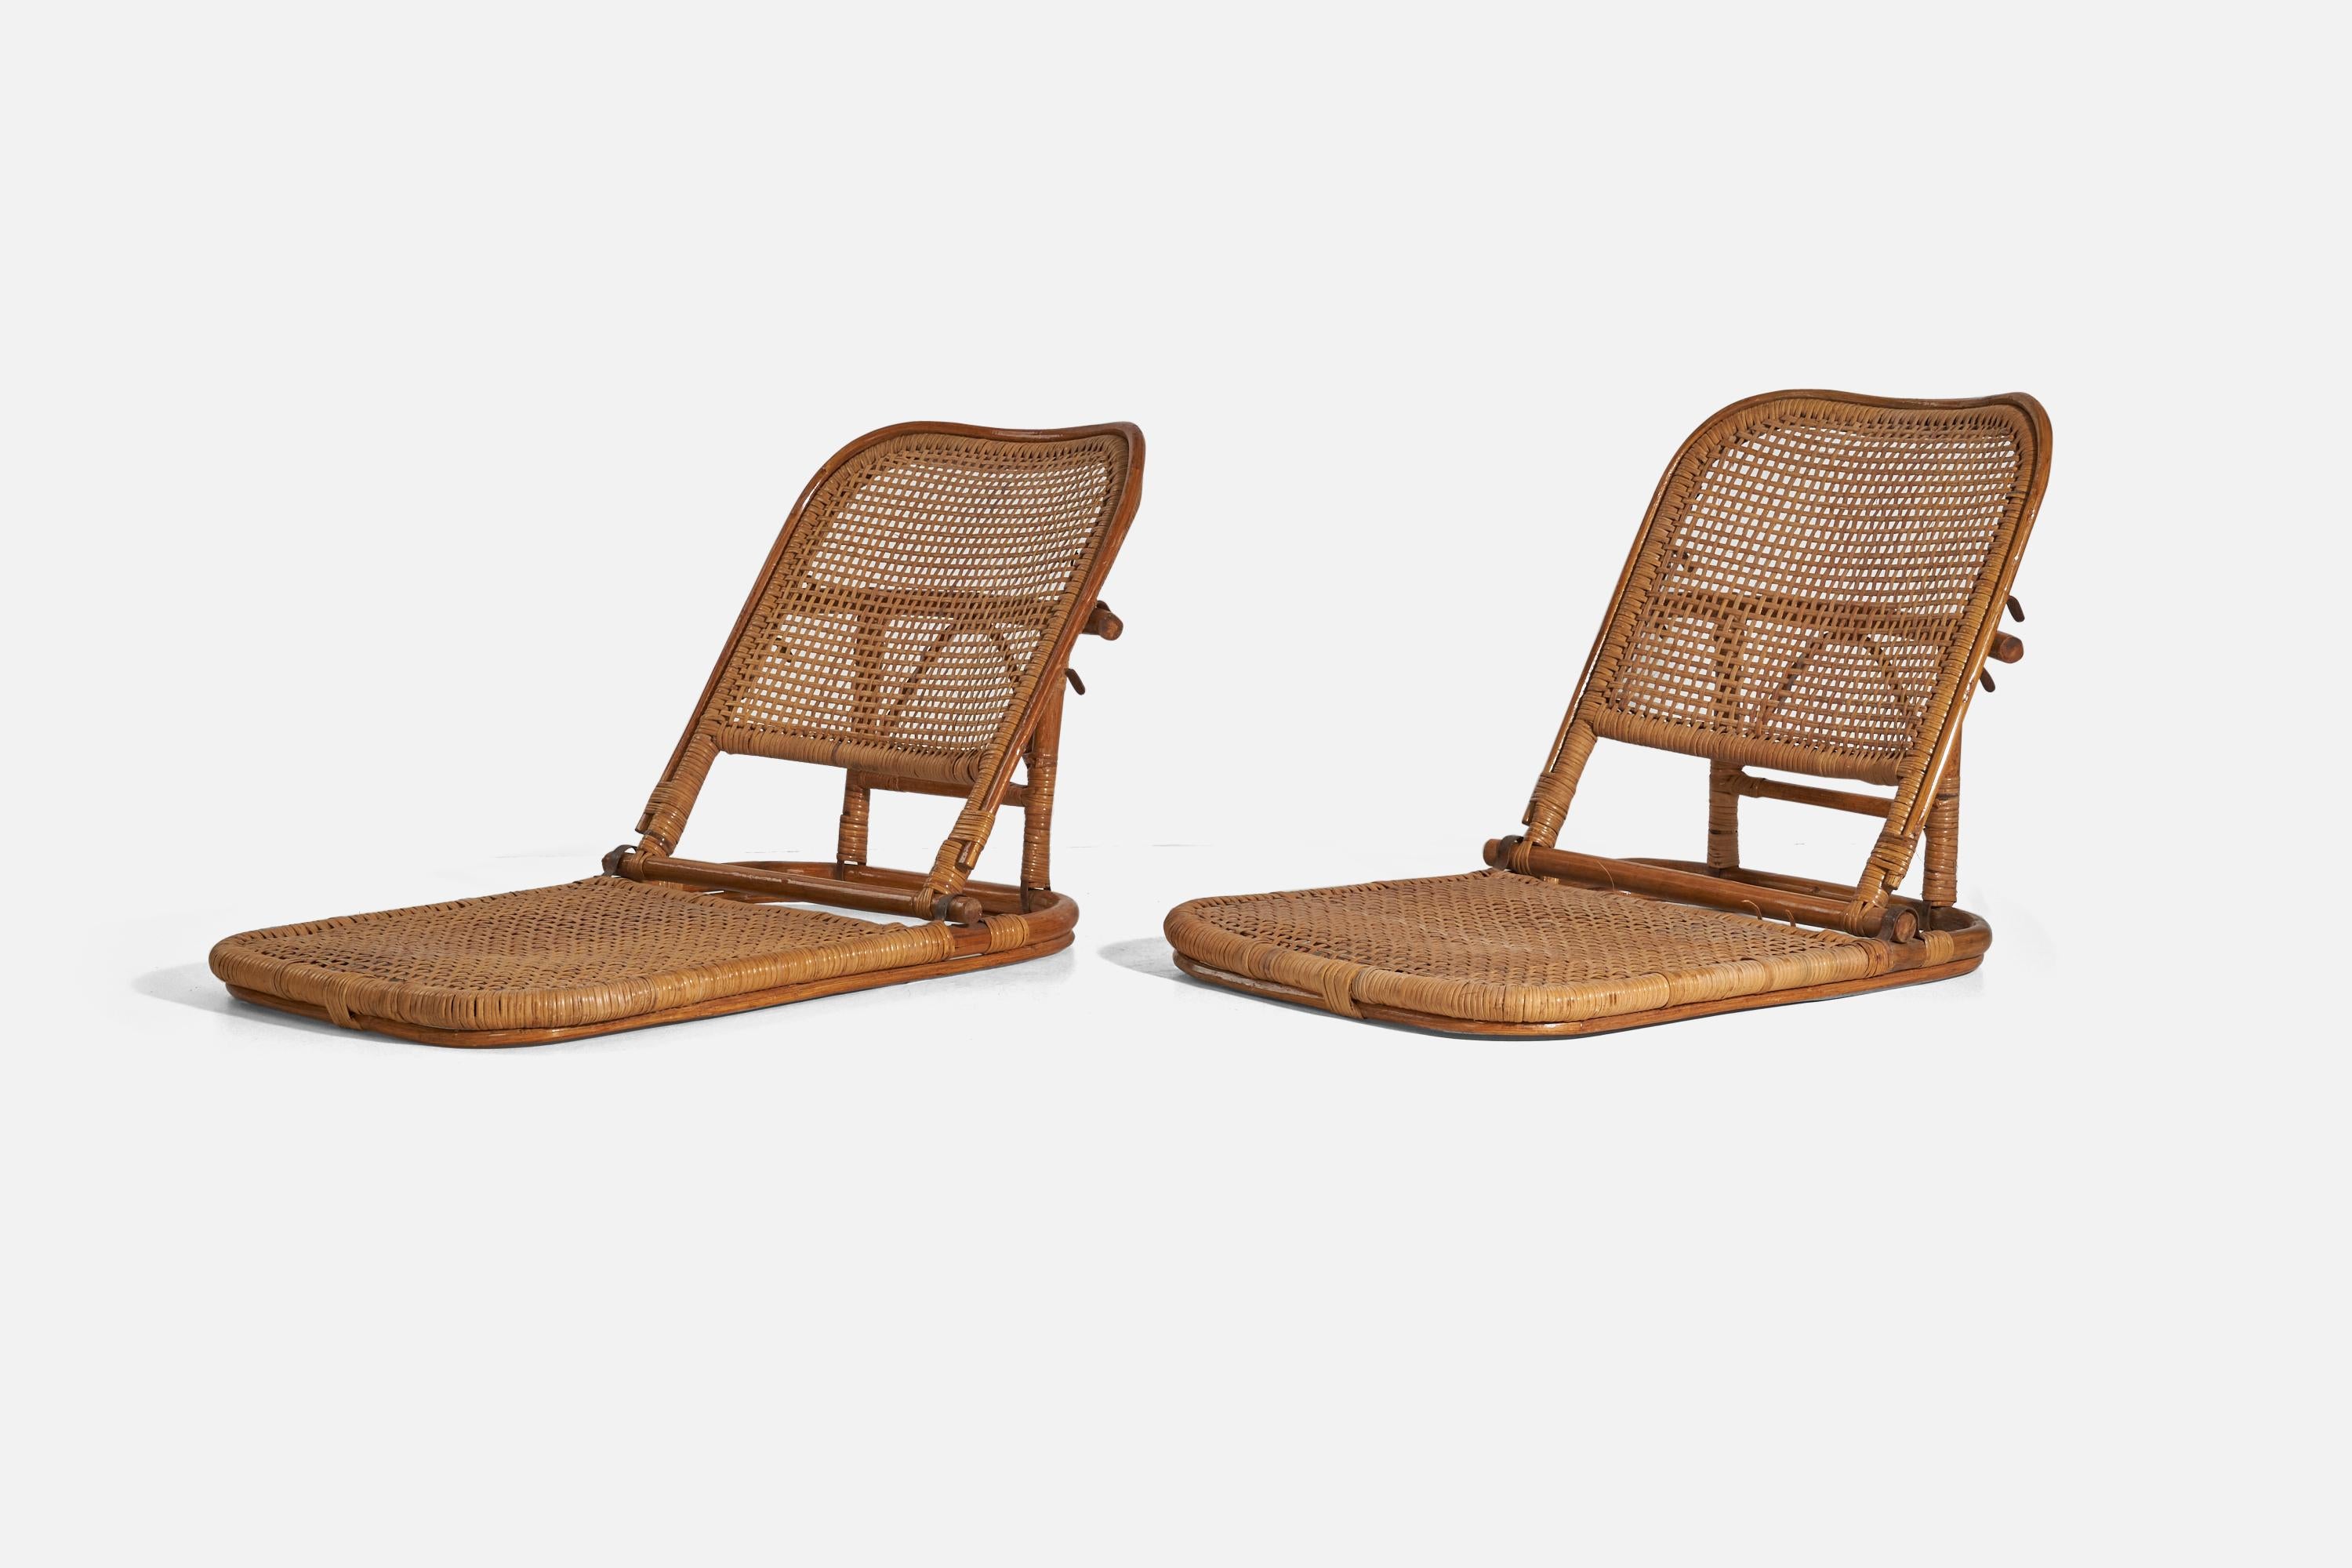 Ein Paar klappbare Lounge-Sessel aus Bambus, Rattan und Metall, entworfen und hergestellt in den USA, 1950er Jahre.